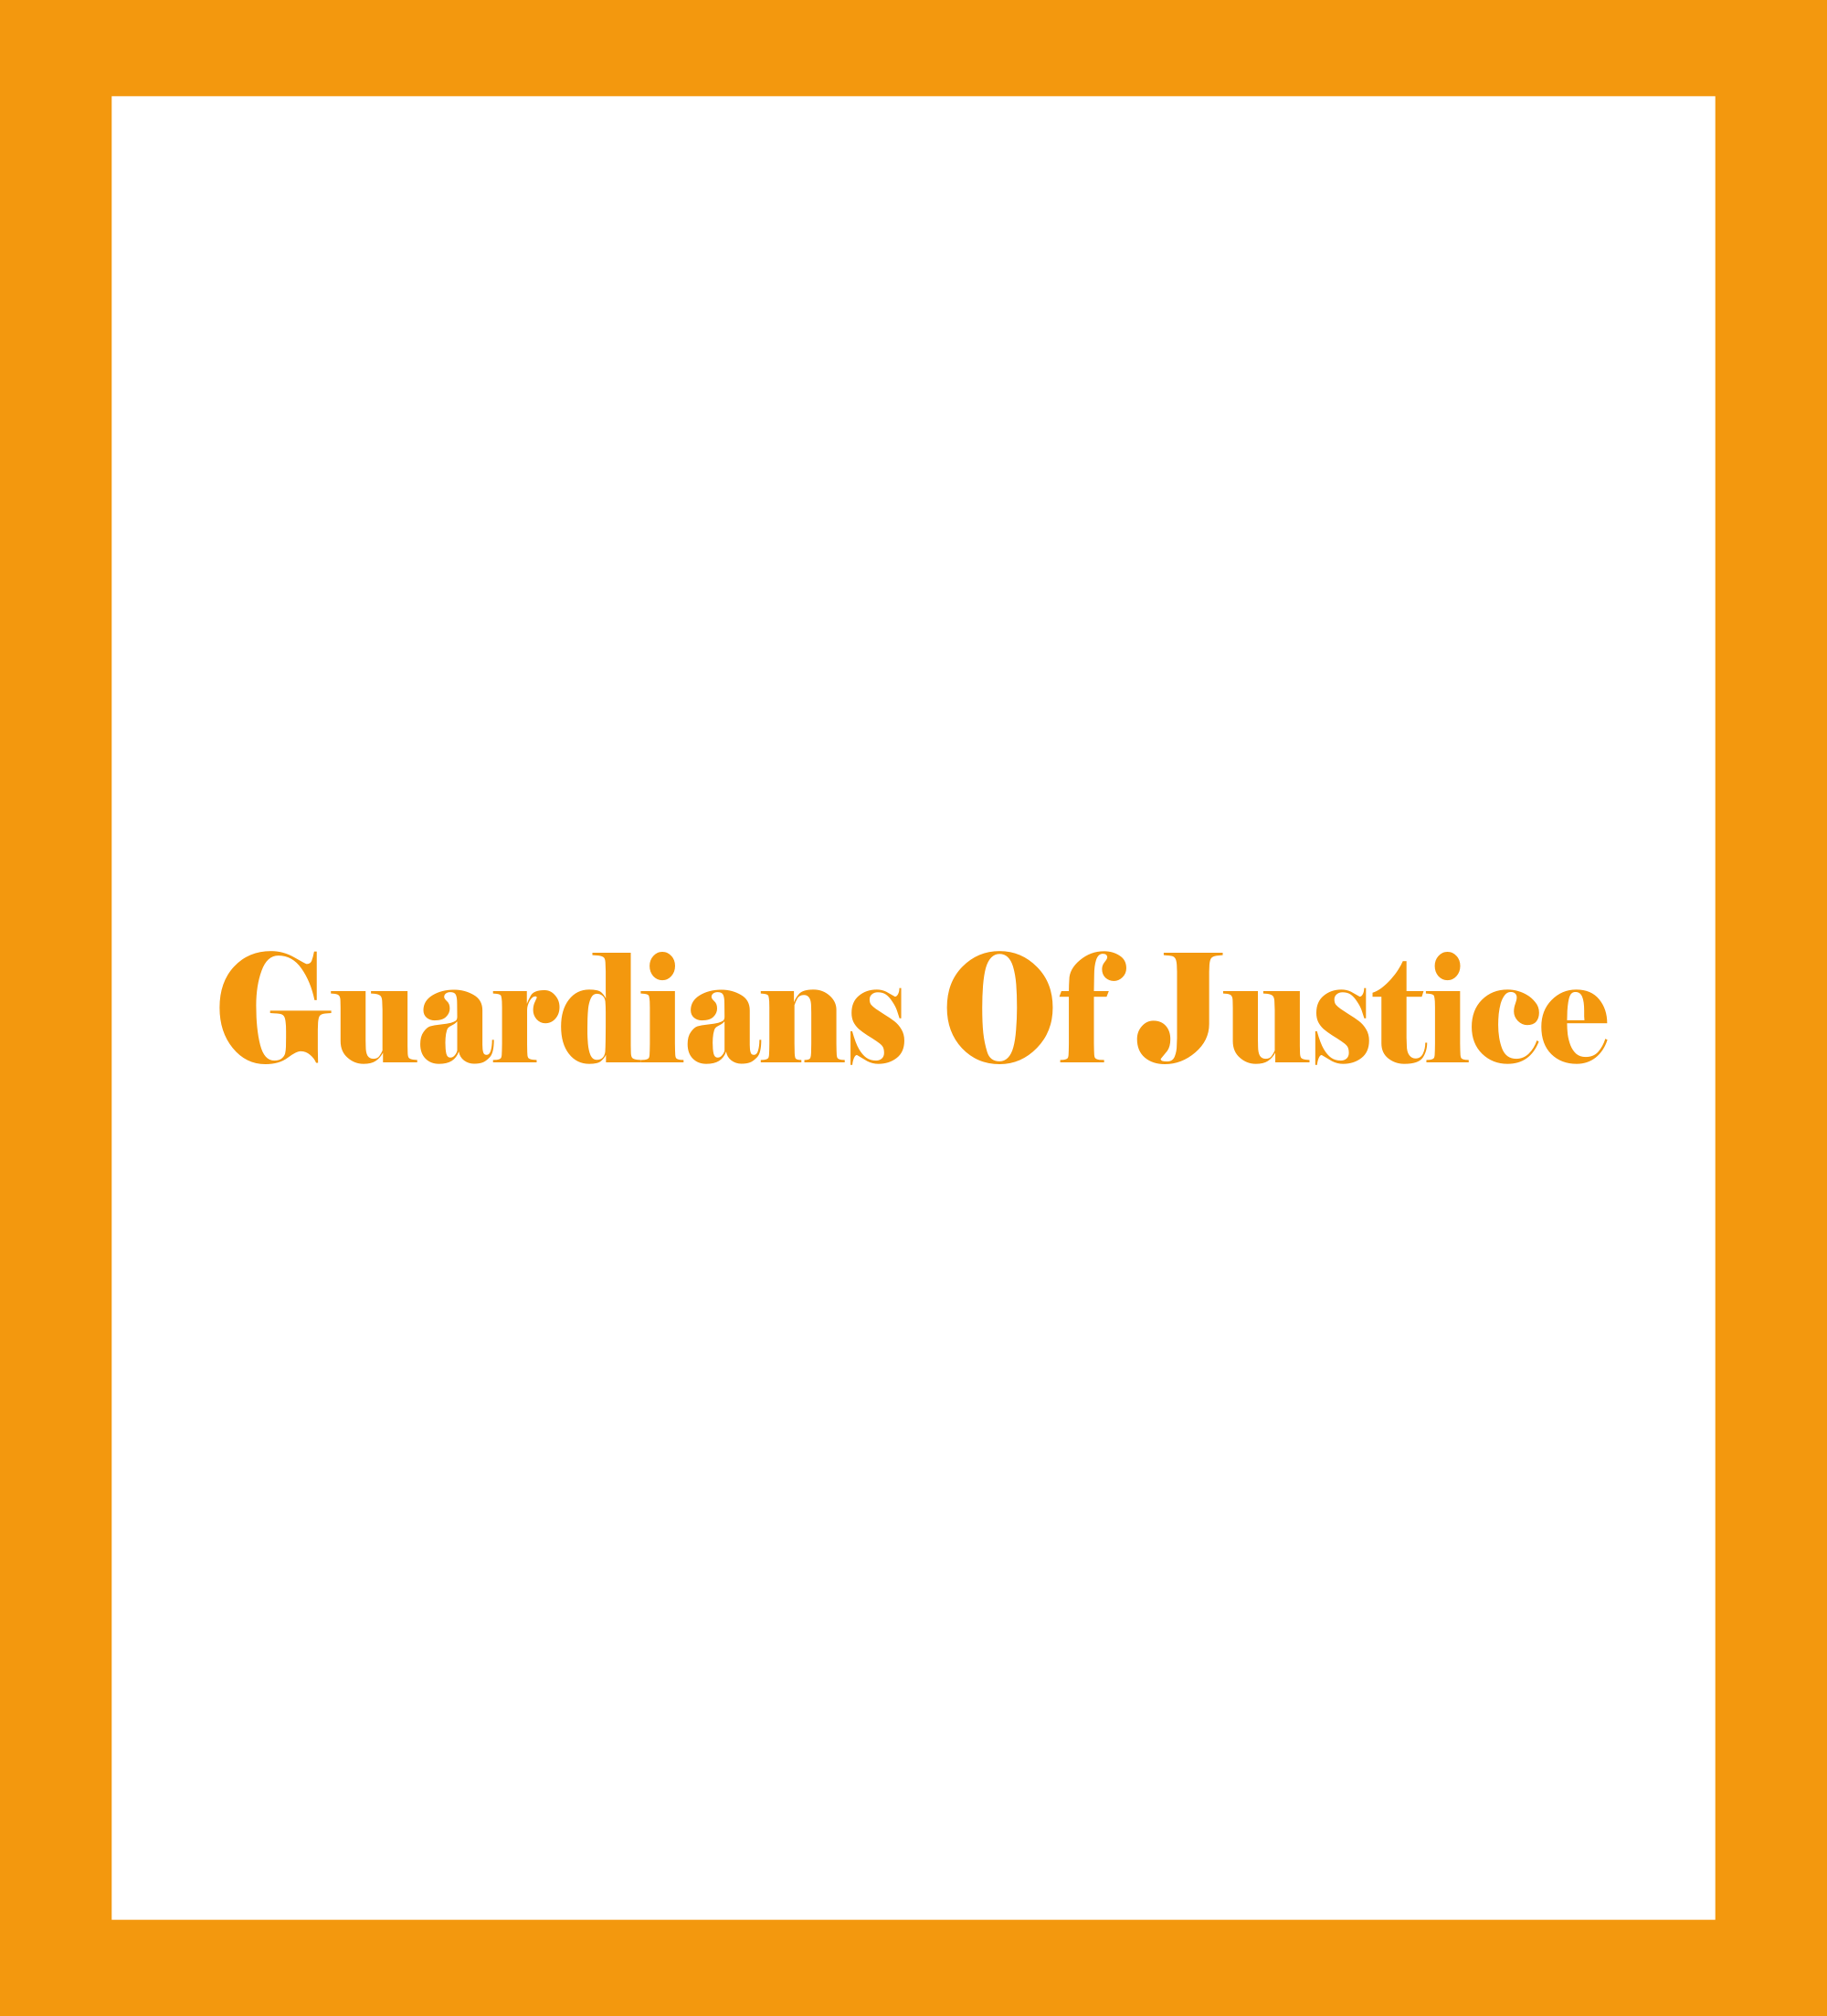 Los guardianes de la justicia